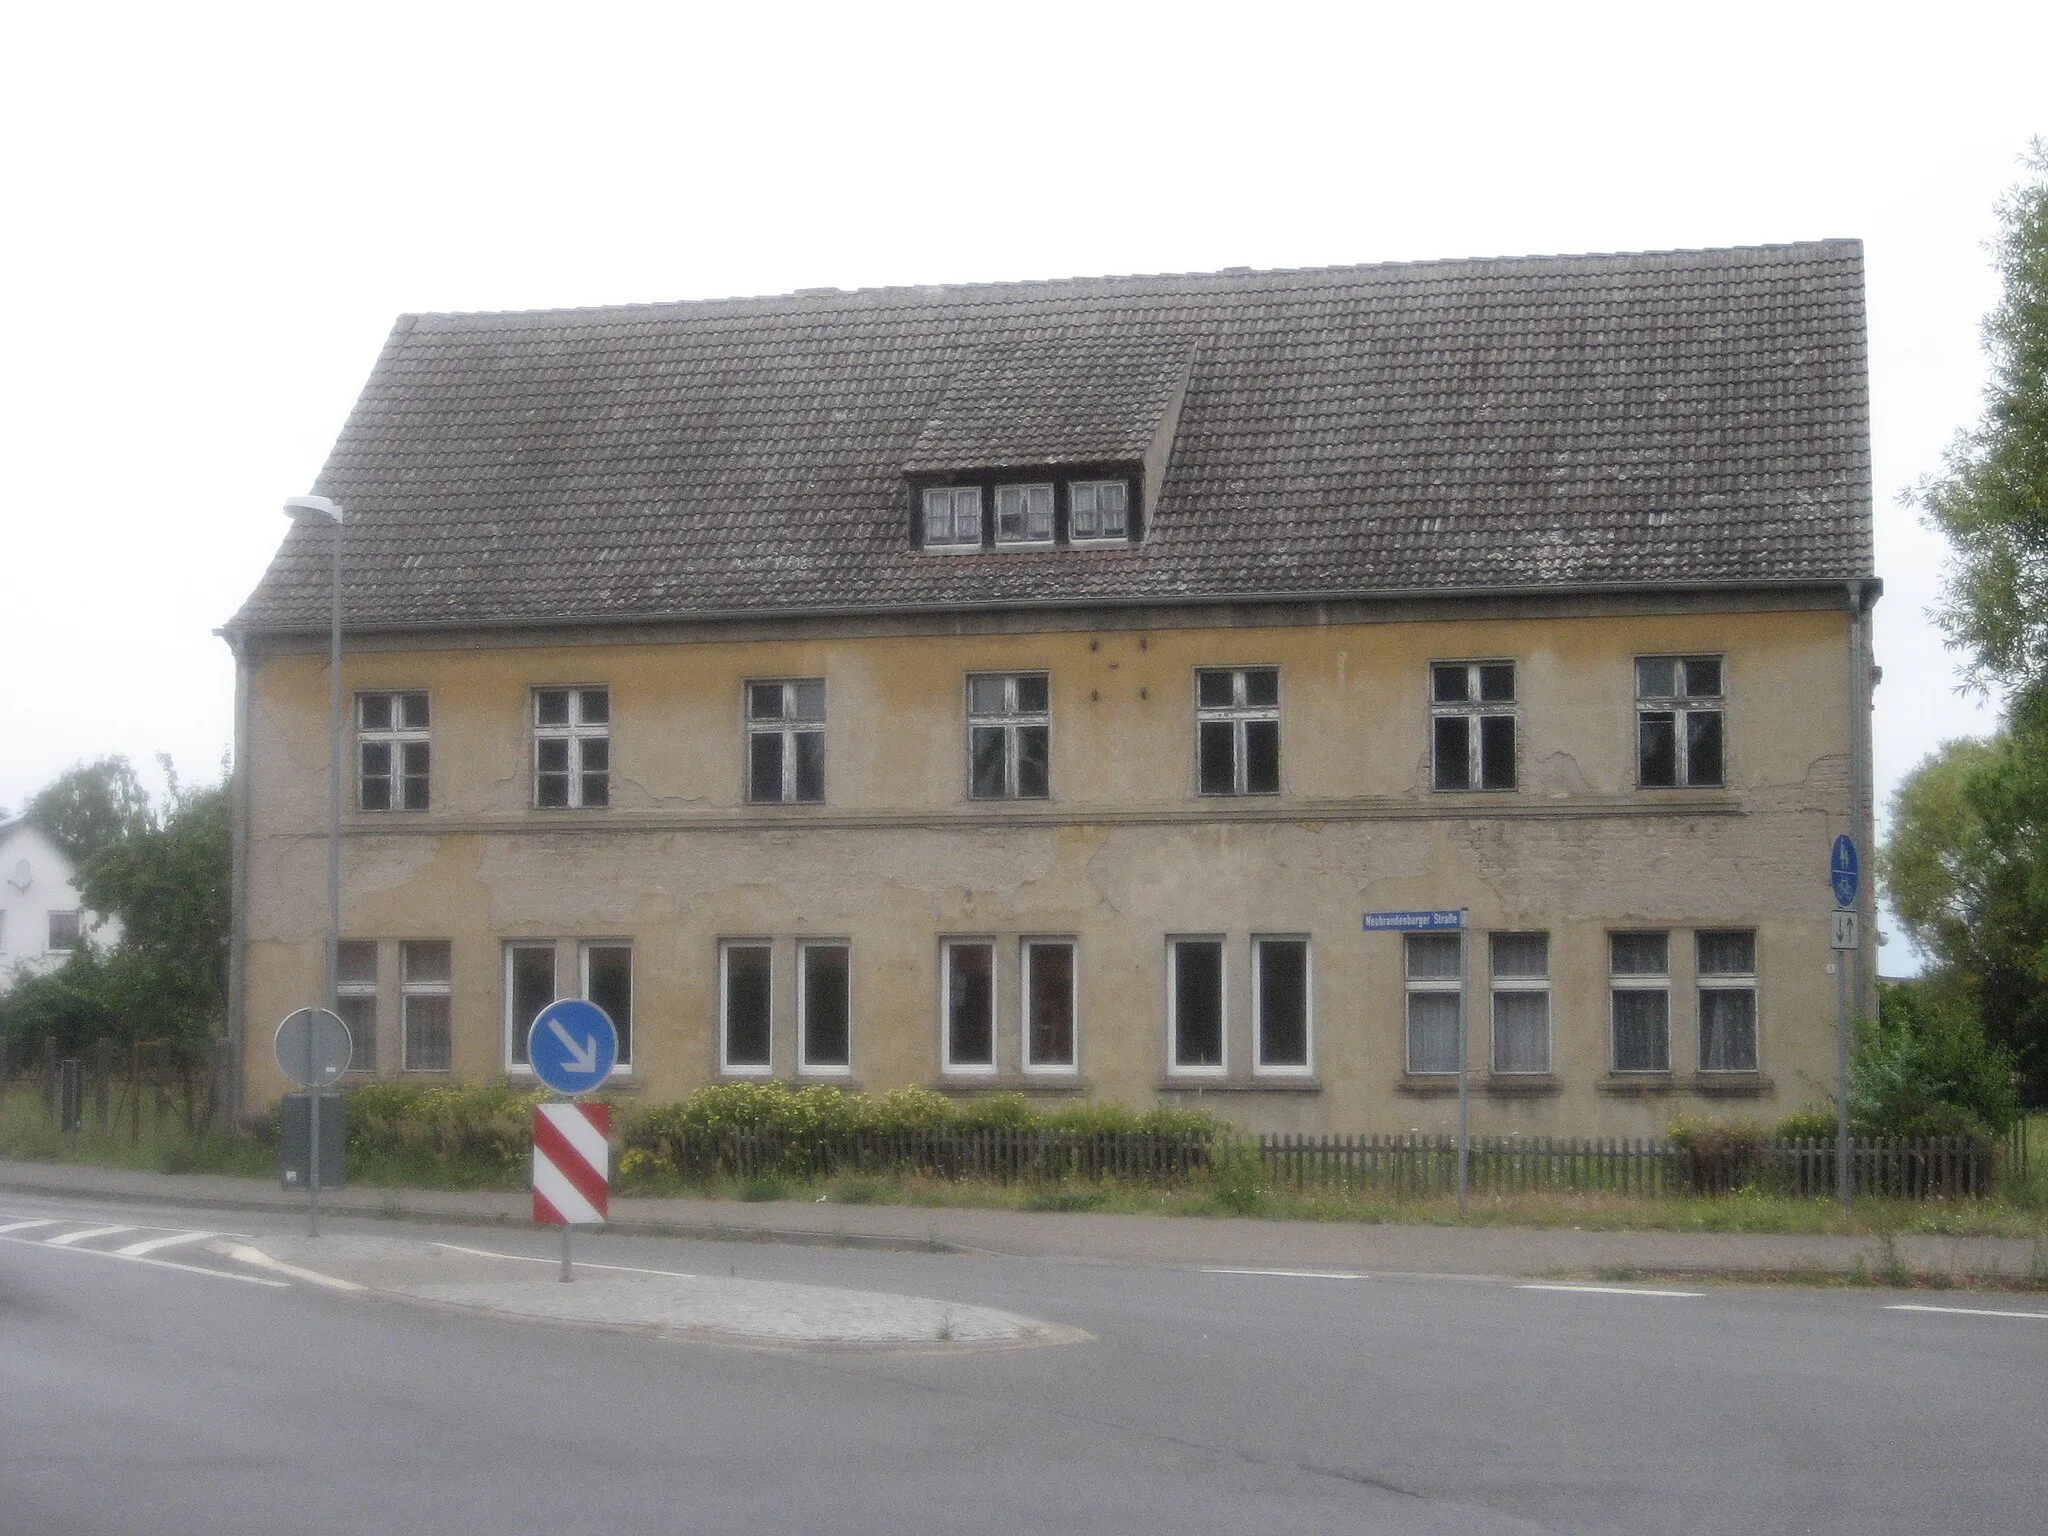 Photo showing: Gebäude an der Neubrandenburger Straße in Ferdinandshof, in der Nähe des Bahnhofs beim Bahnübergang.